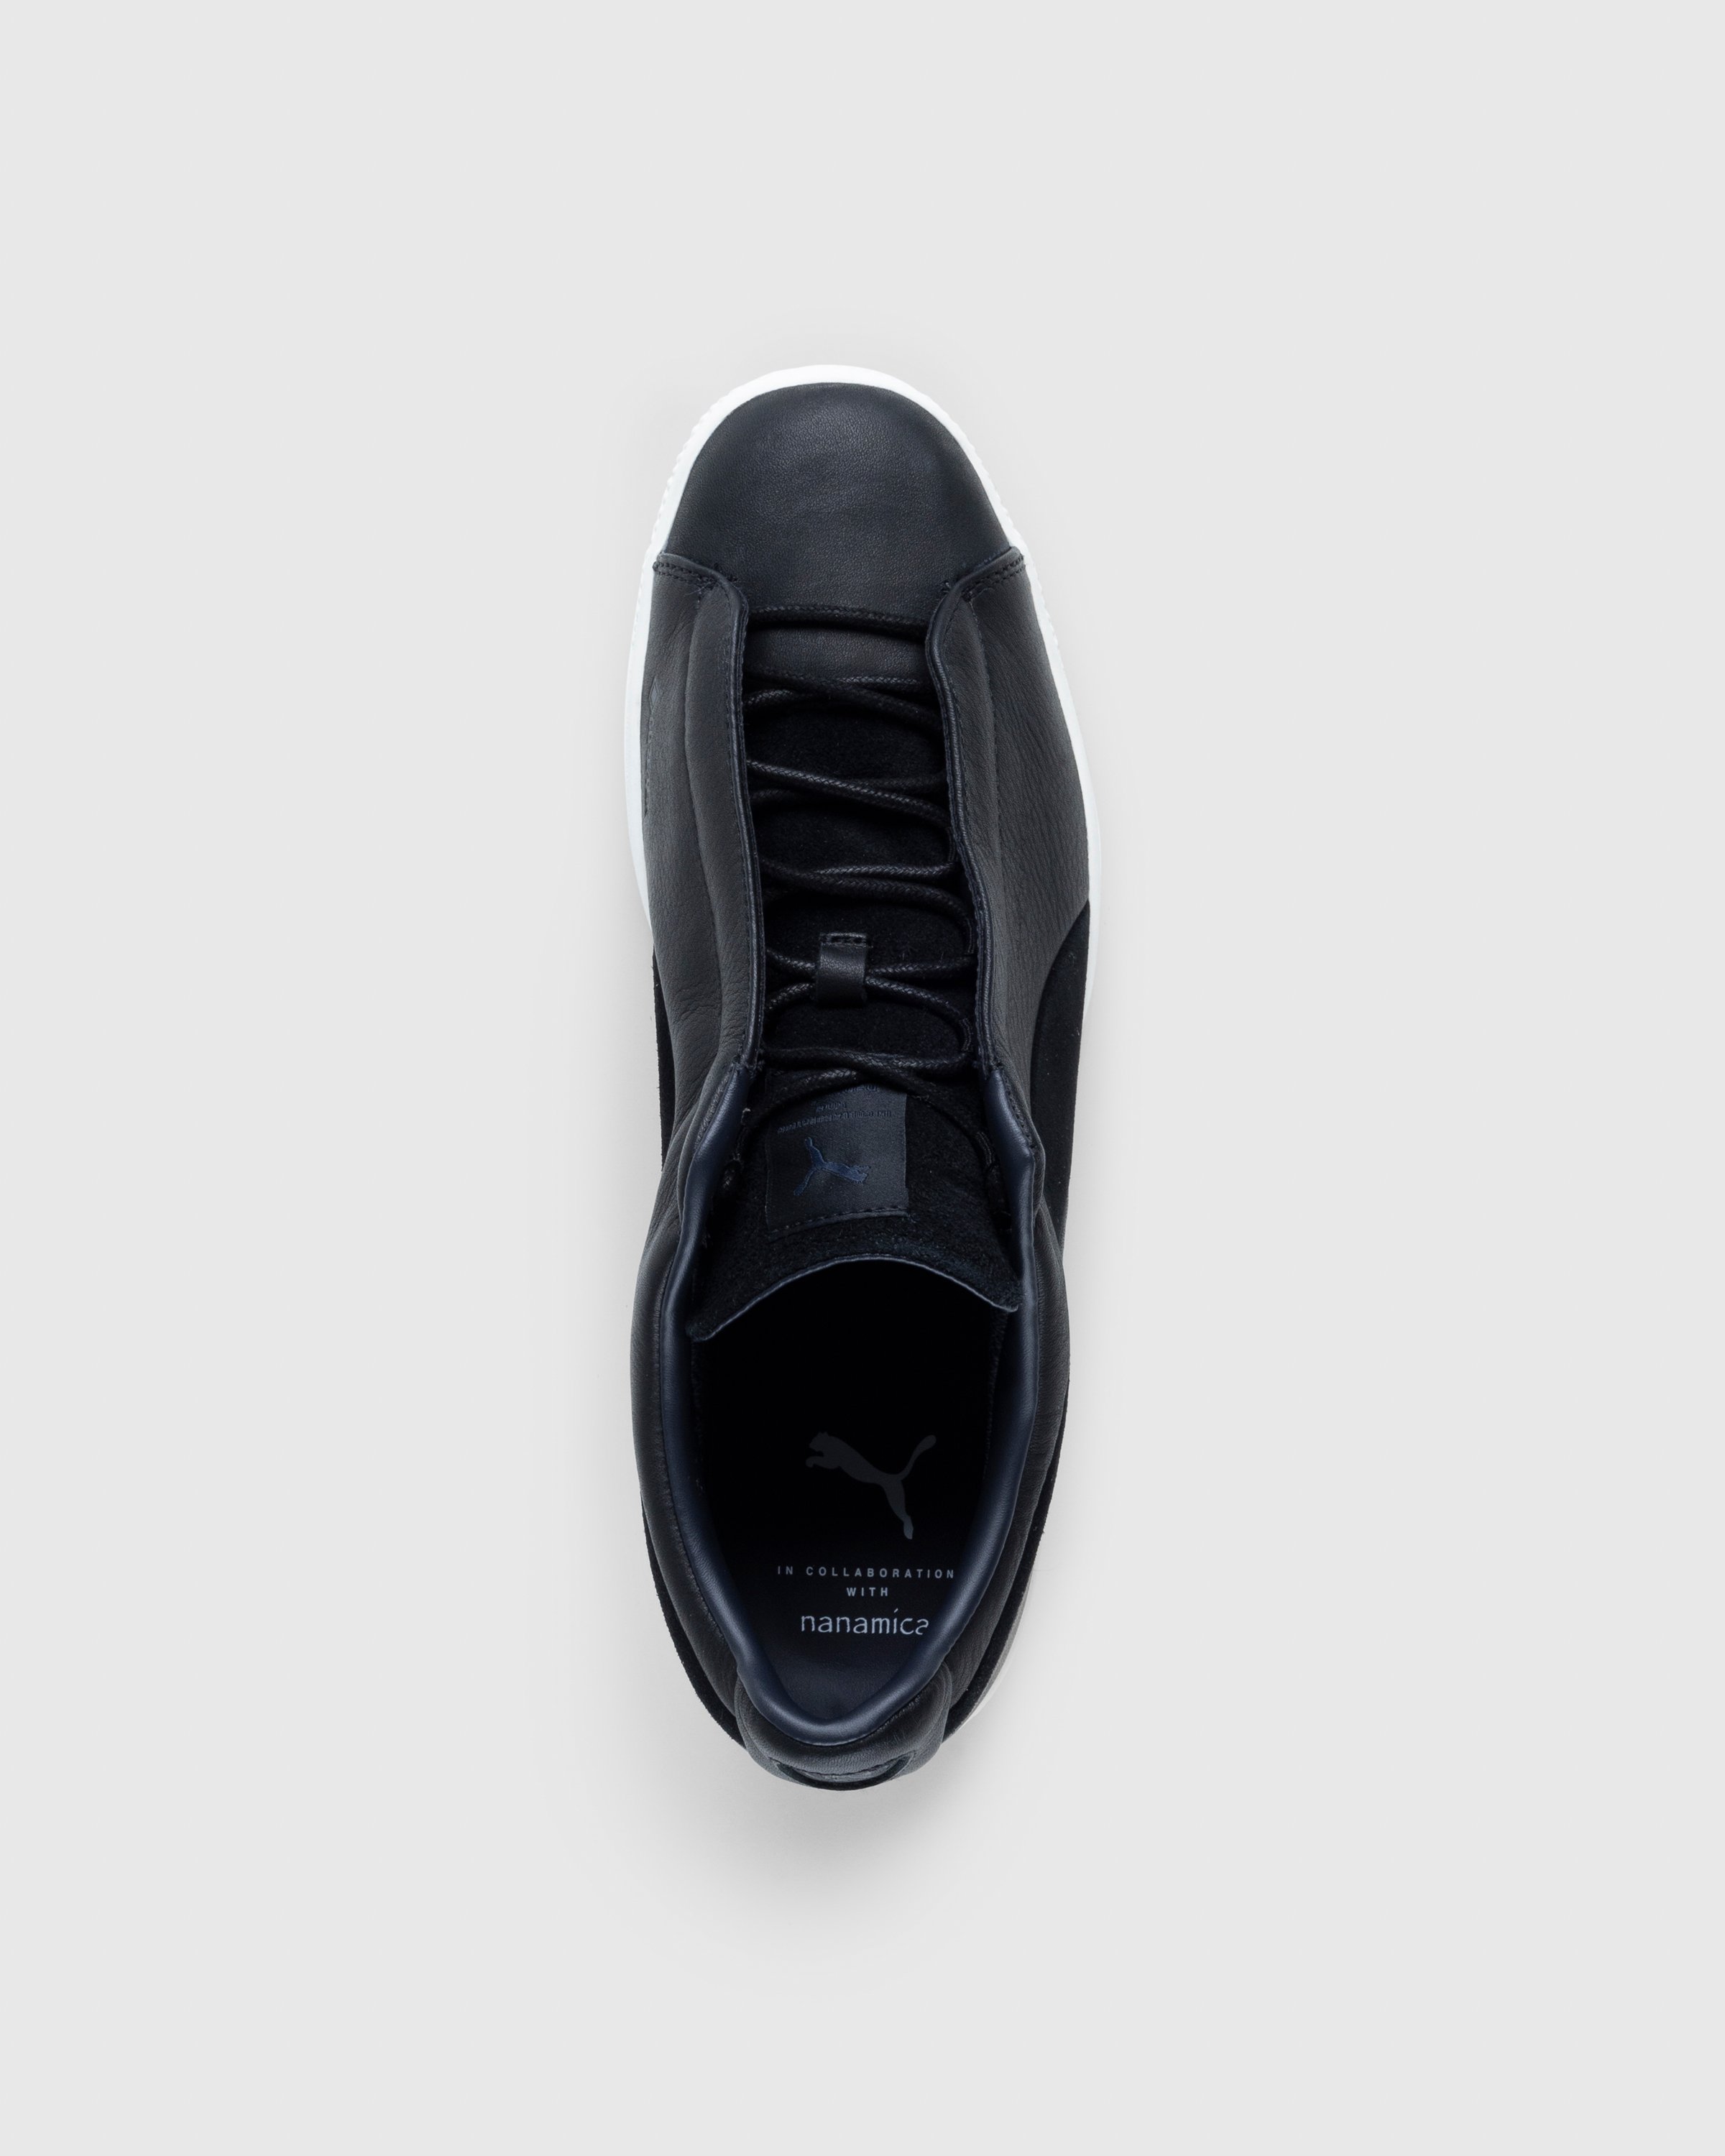 Puma x Nanamica - Clyde GORE-TEX Black - Footwear - Black - Image 5